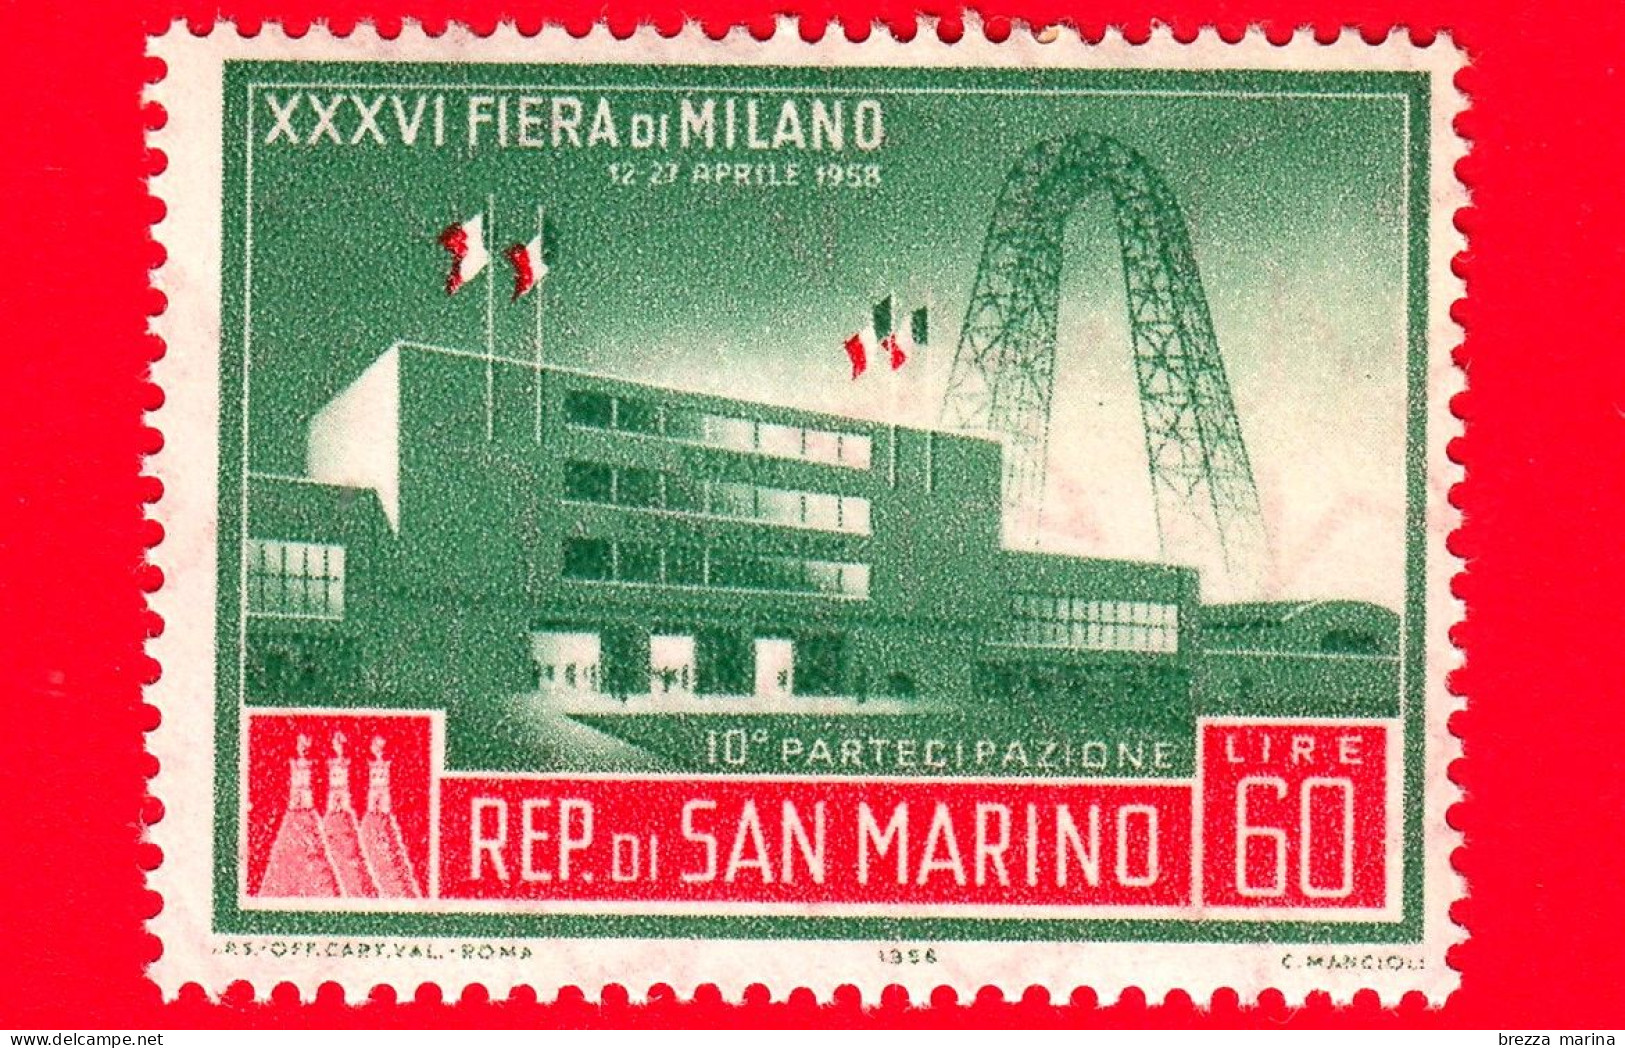 Nuovo - MNH - SAN MARINO - 1958 - XXXVI Fiera Di Milano - 10 Partecipazione - 60 - Ongebruikt